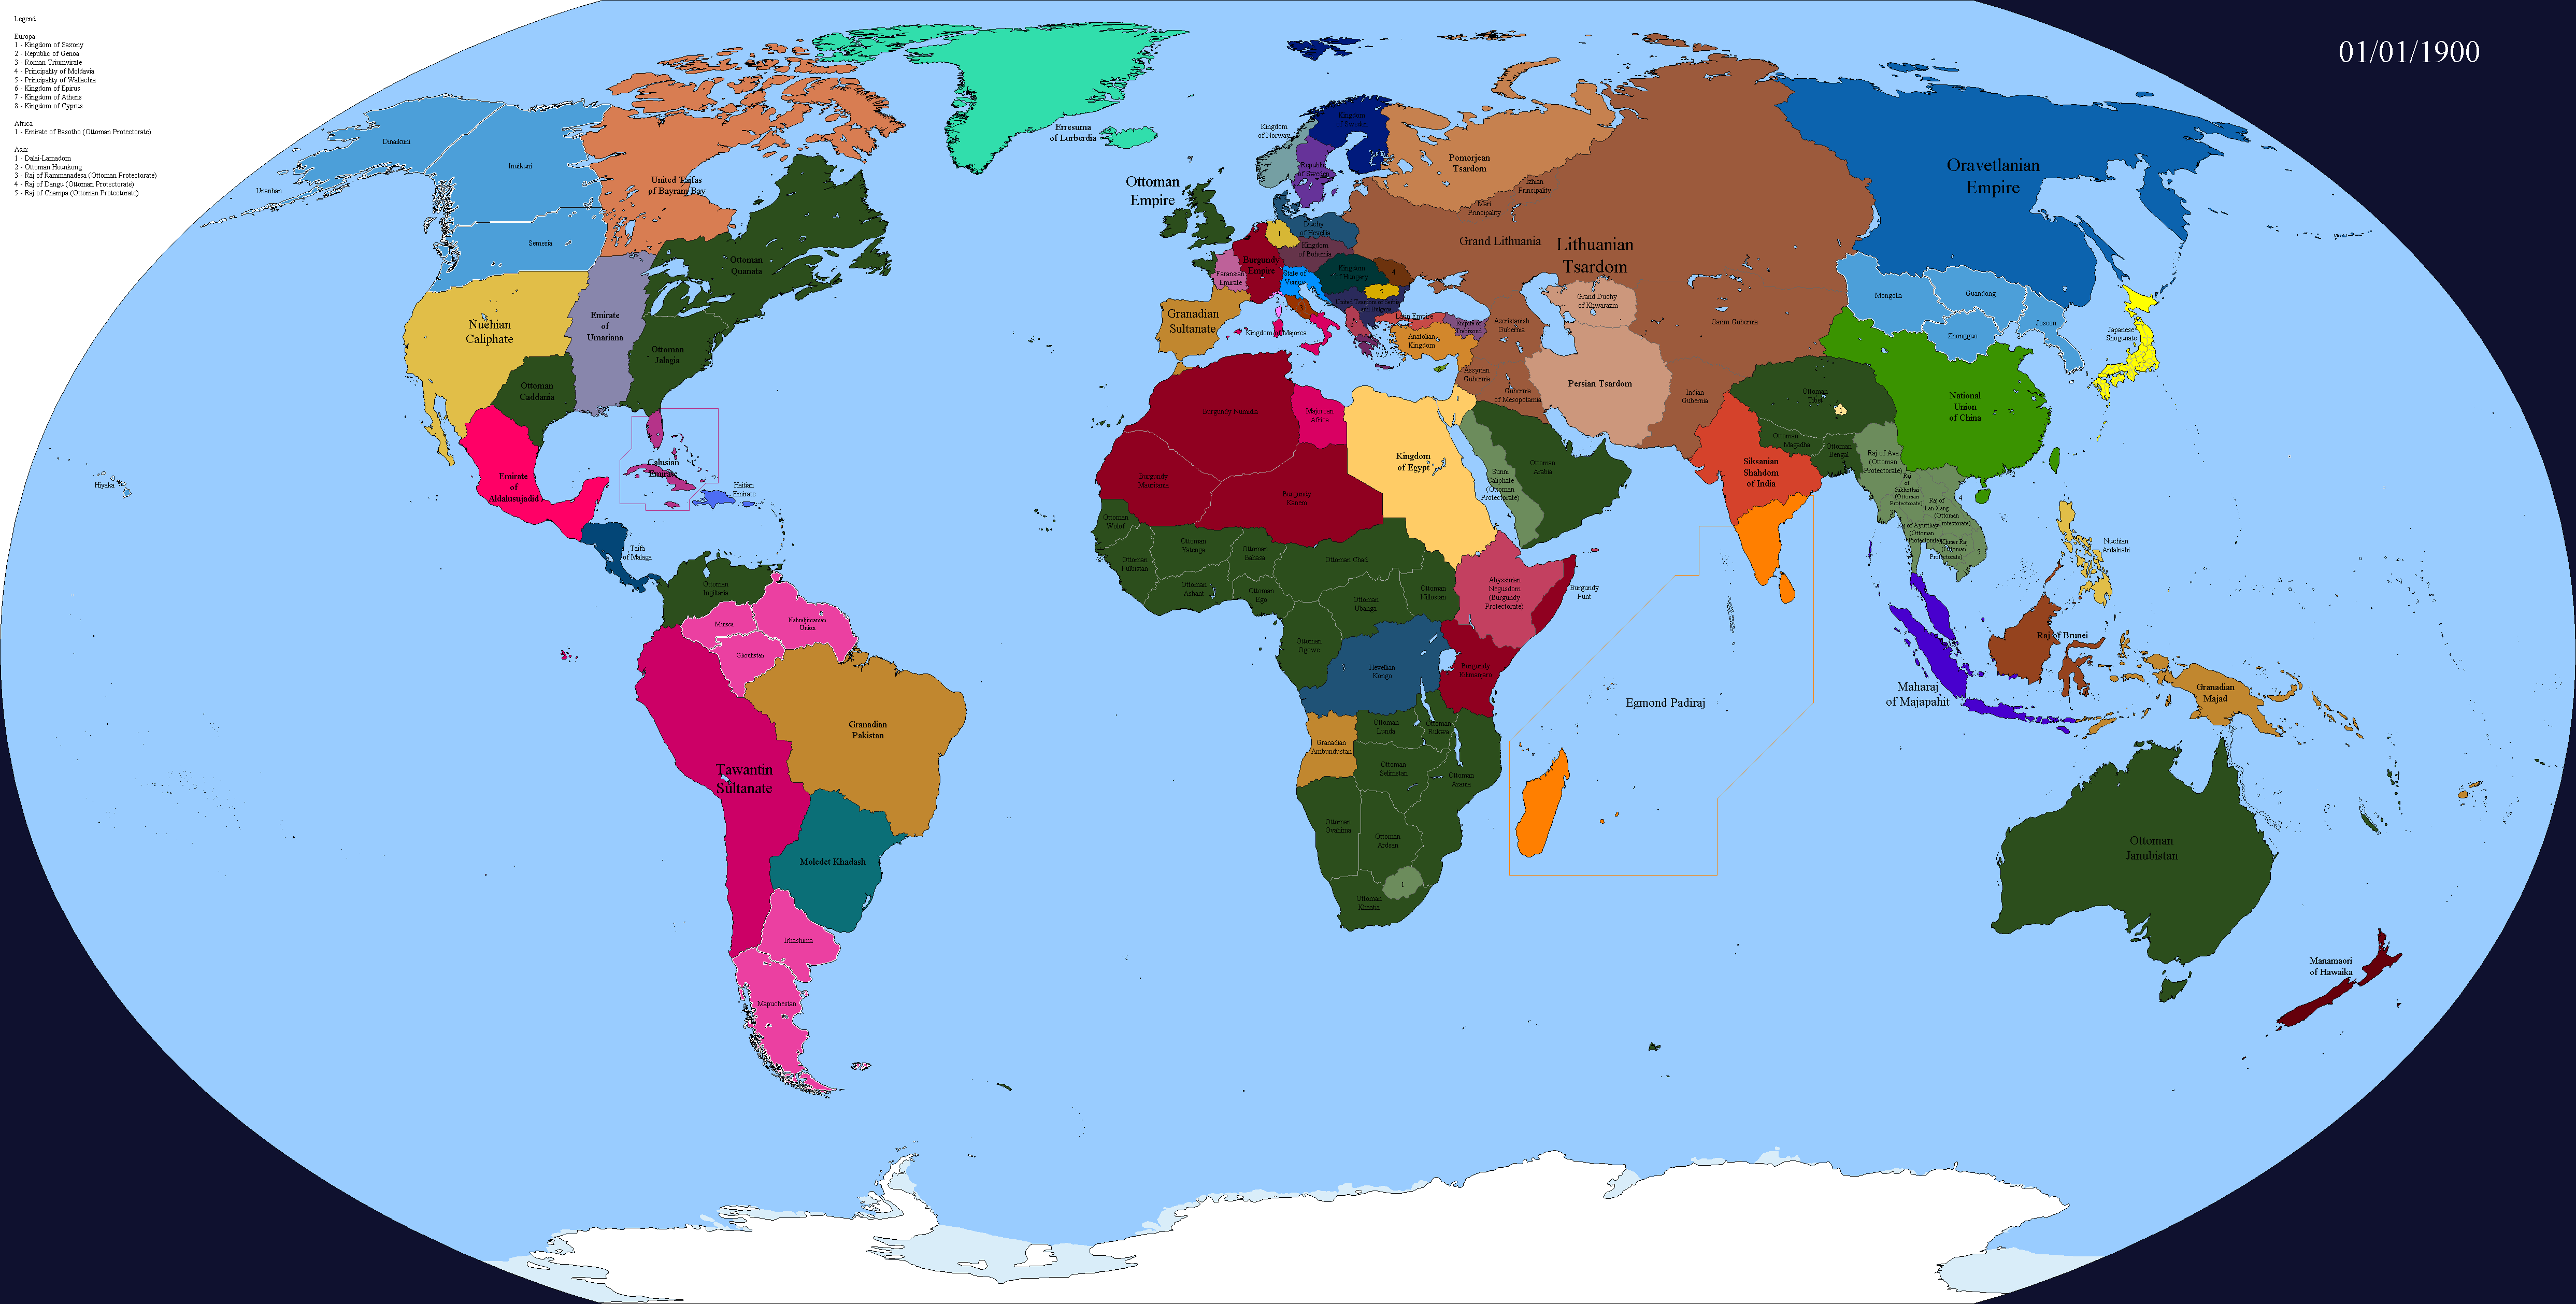 Книги альтернативная история 2020. Политическая карта Европы 2100. Карта Европы 2100 года. Альтернативная карта Европы 2100.